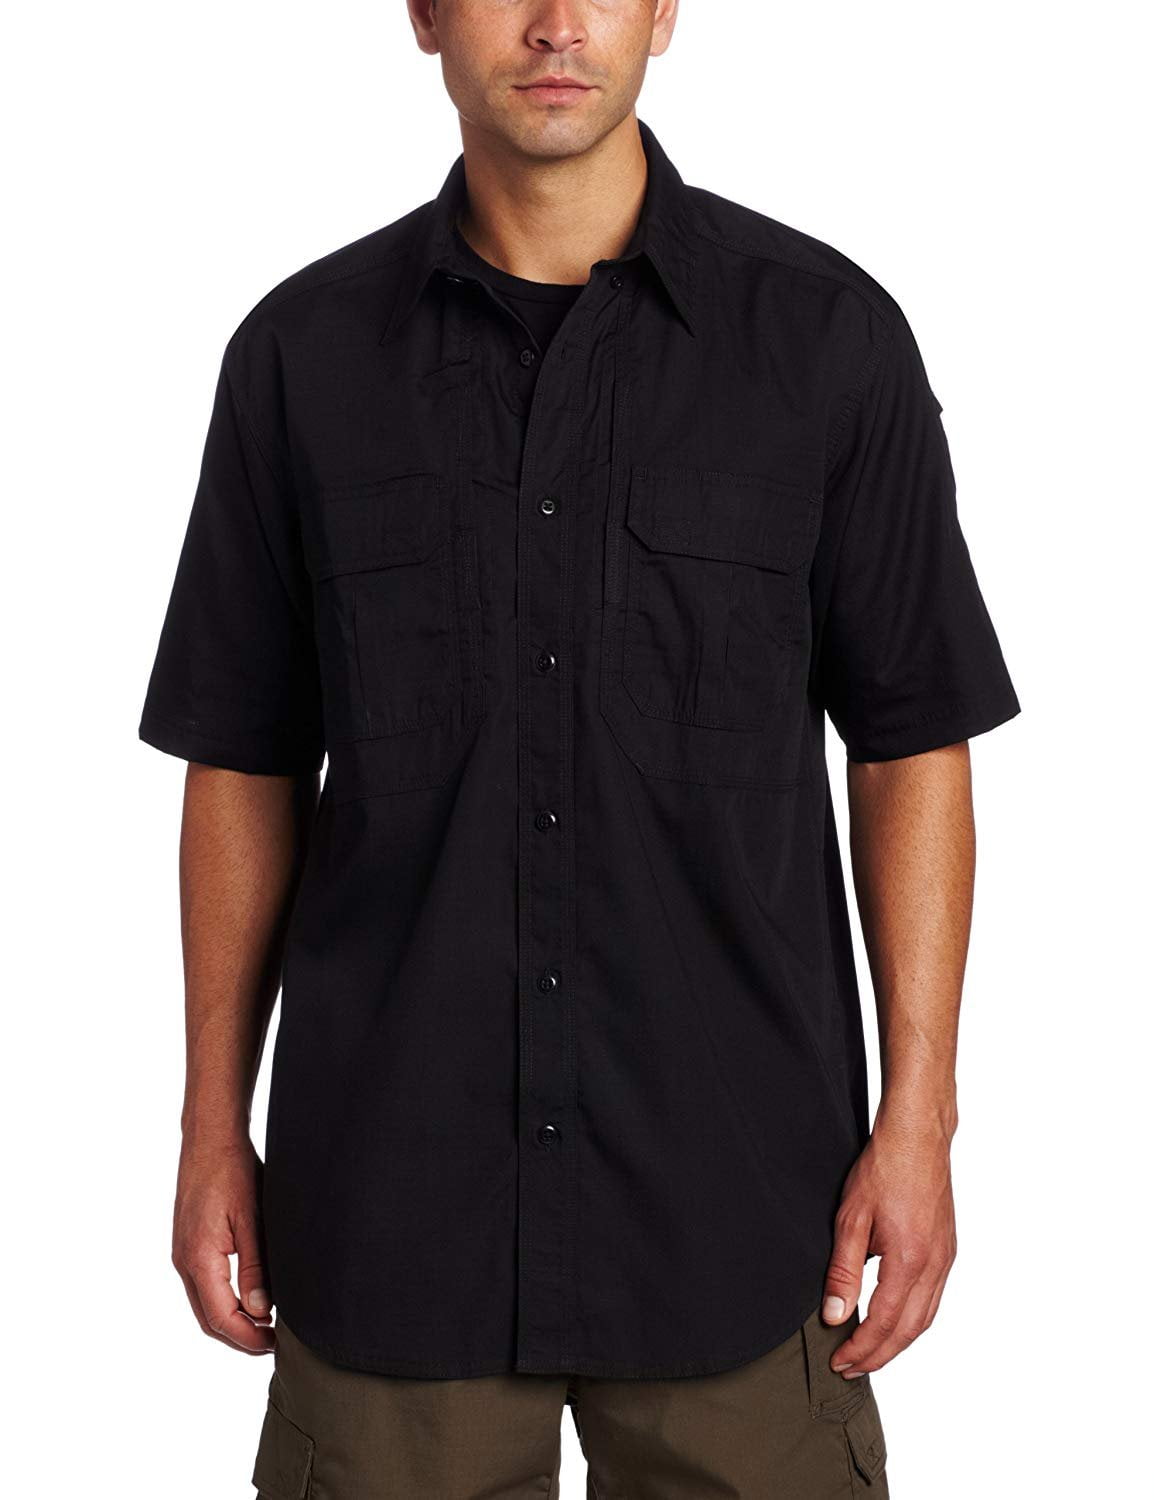 5.11 Taclite Pro Shirt, Black, L - Walmart.com